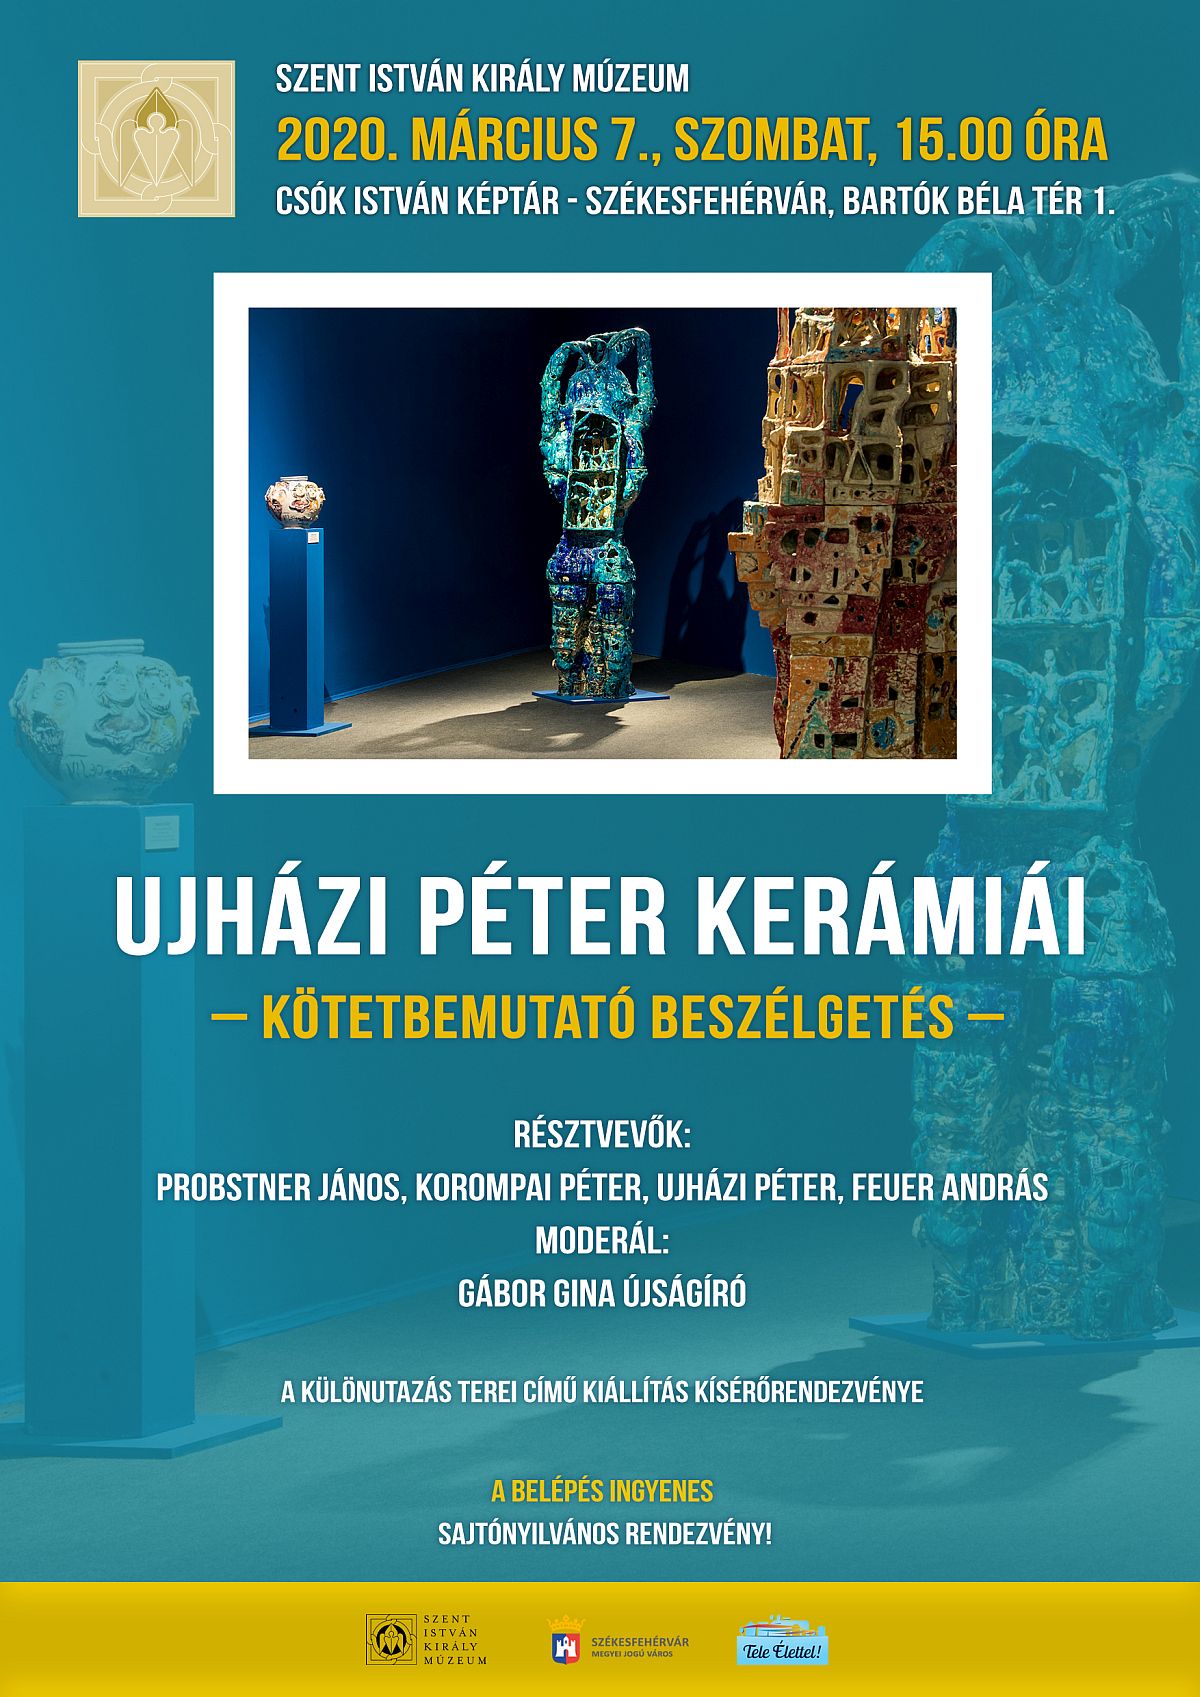 Kötetbemutató beszélgetés szombaton Ujházi Péterrel a Csók István Képtárban